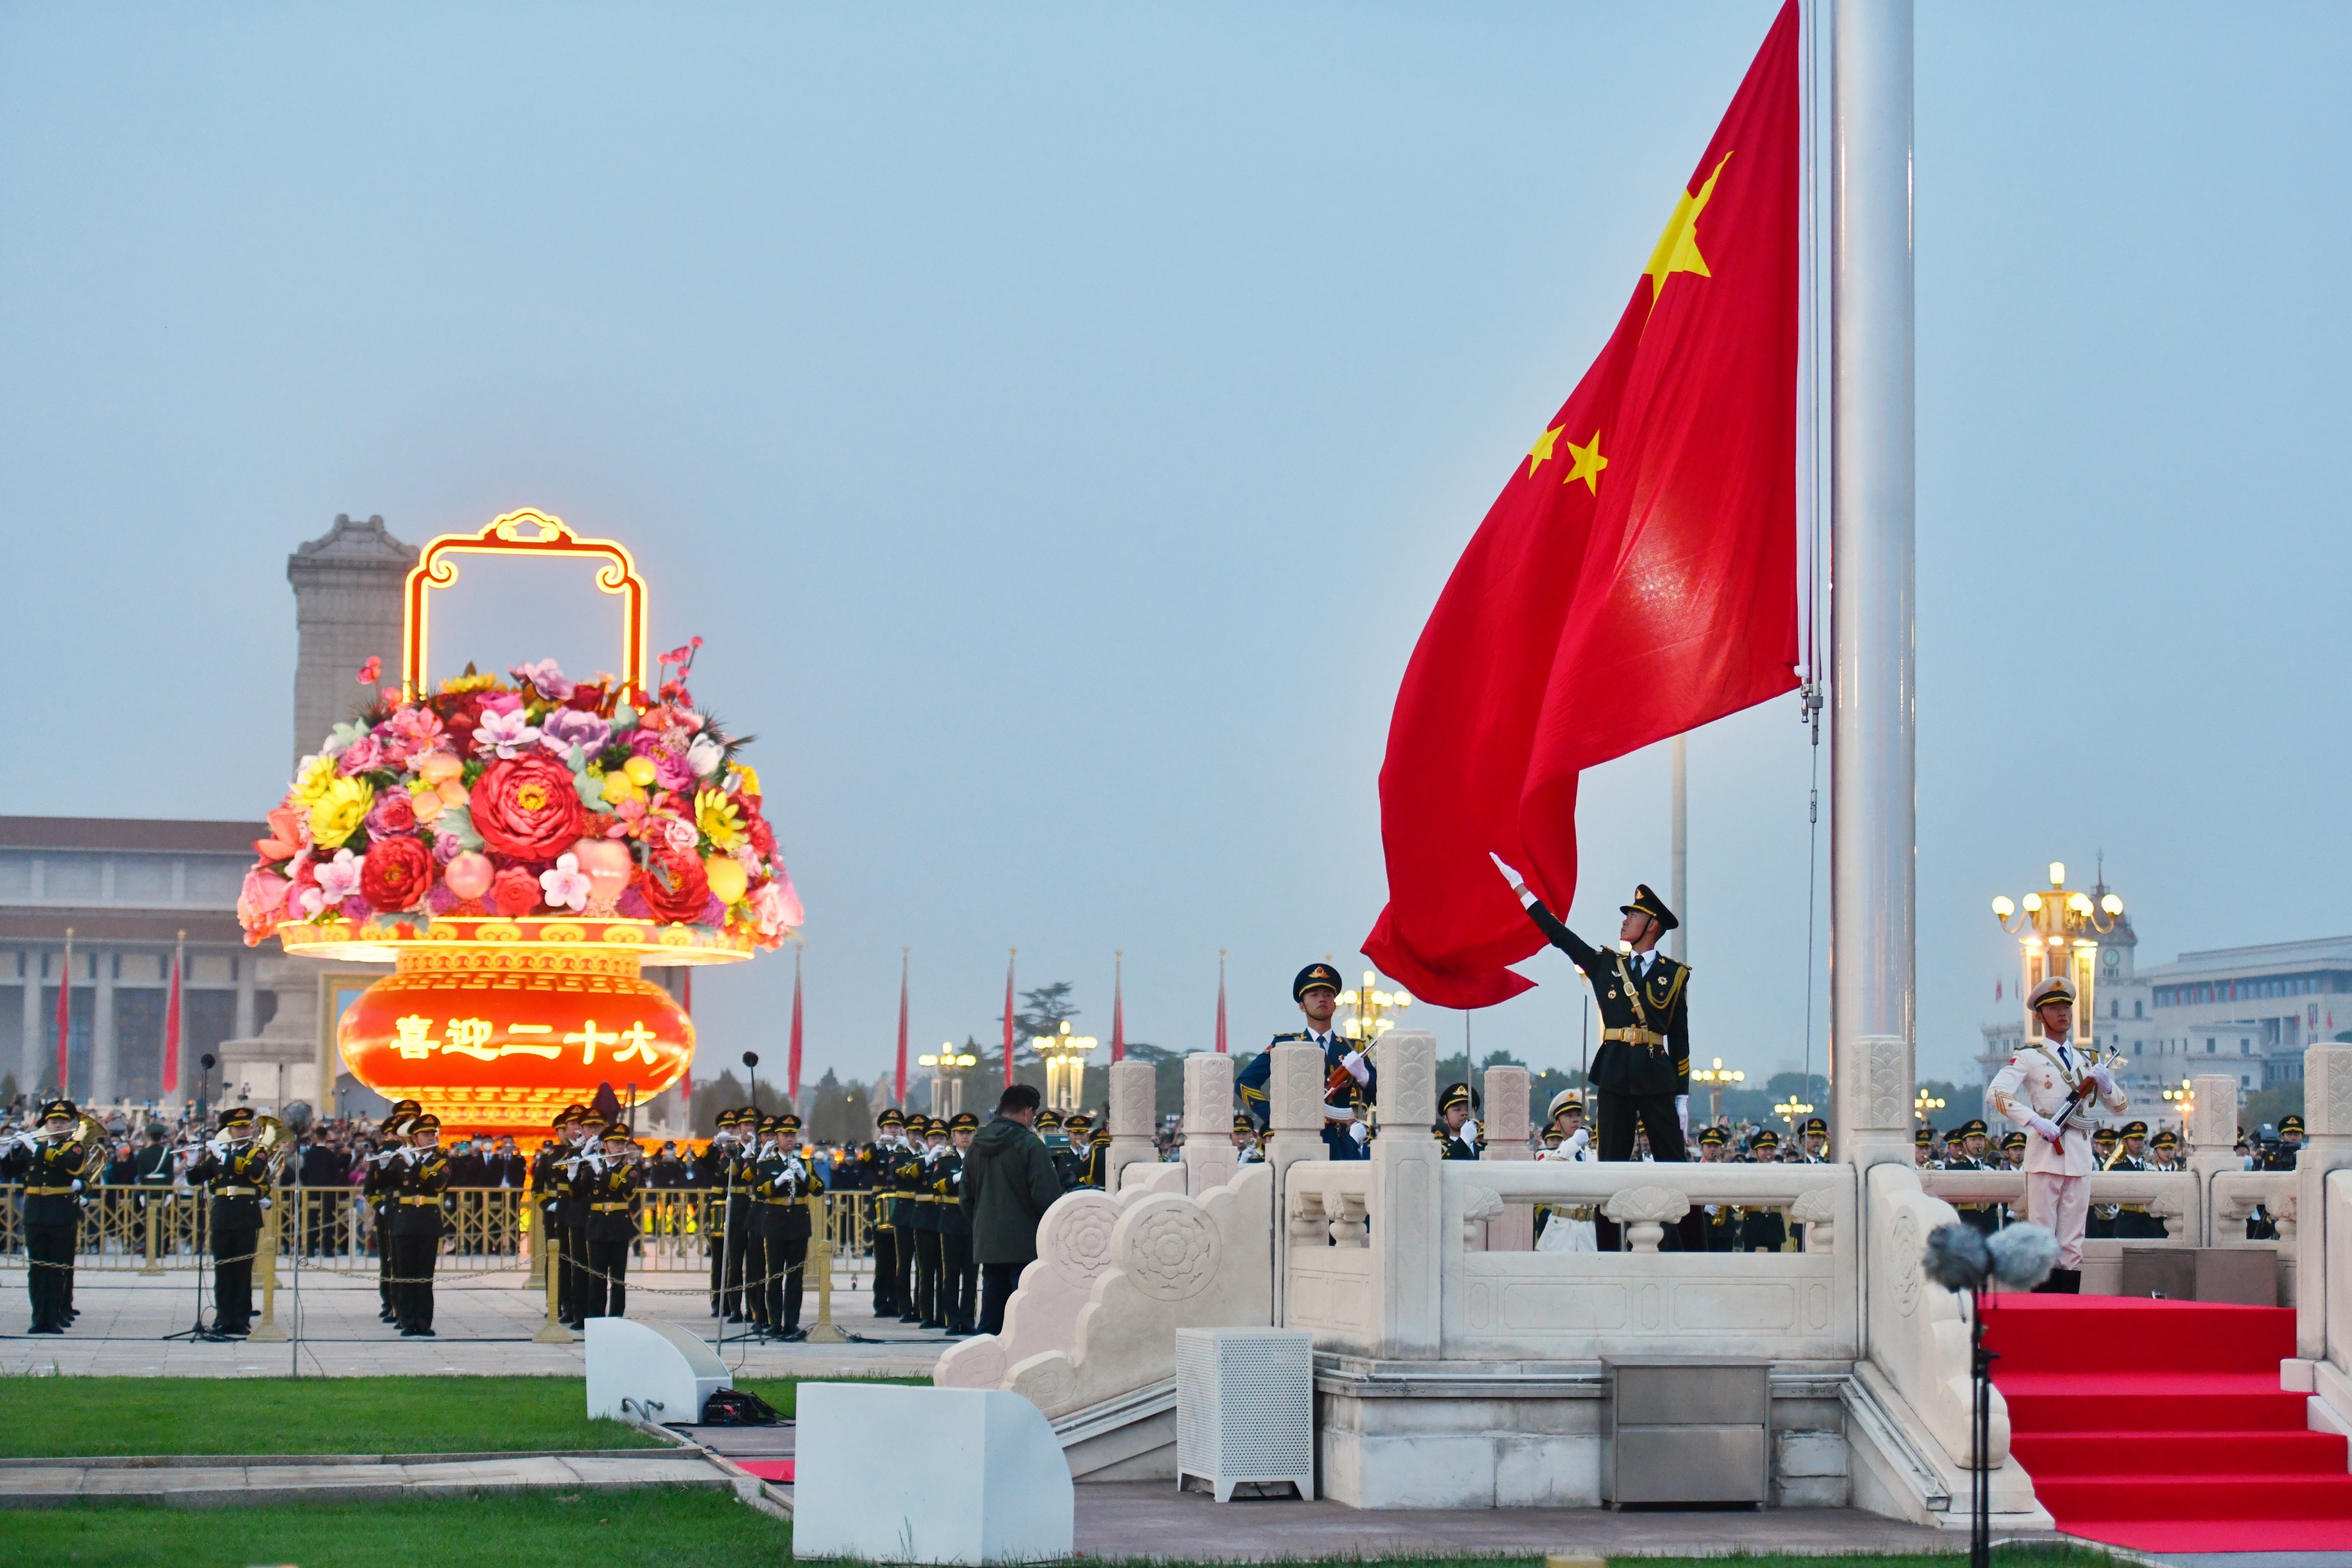 庆祝新中国73周年华诞 群众提前彻夜守候 天安门广场观升旗唱国歌